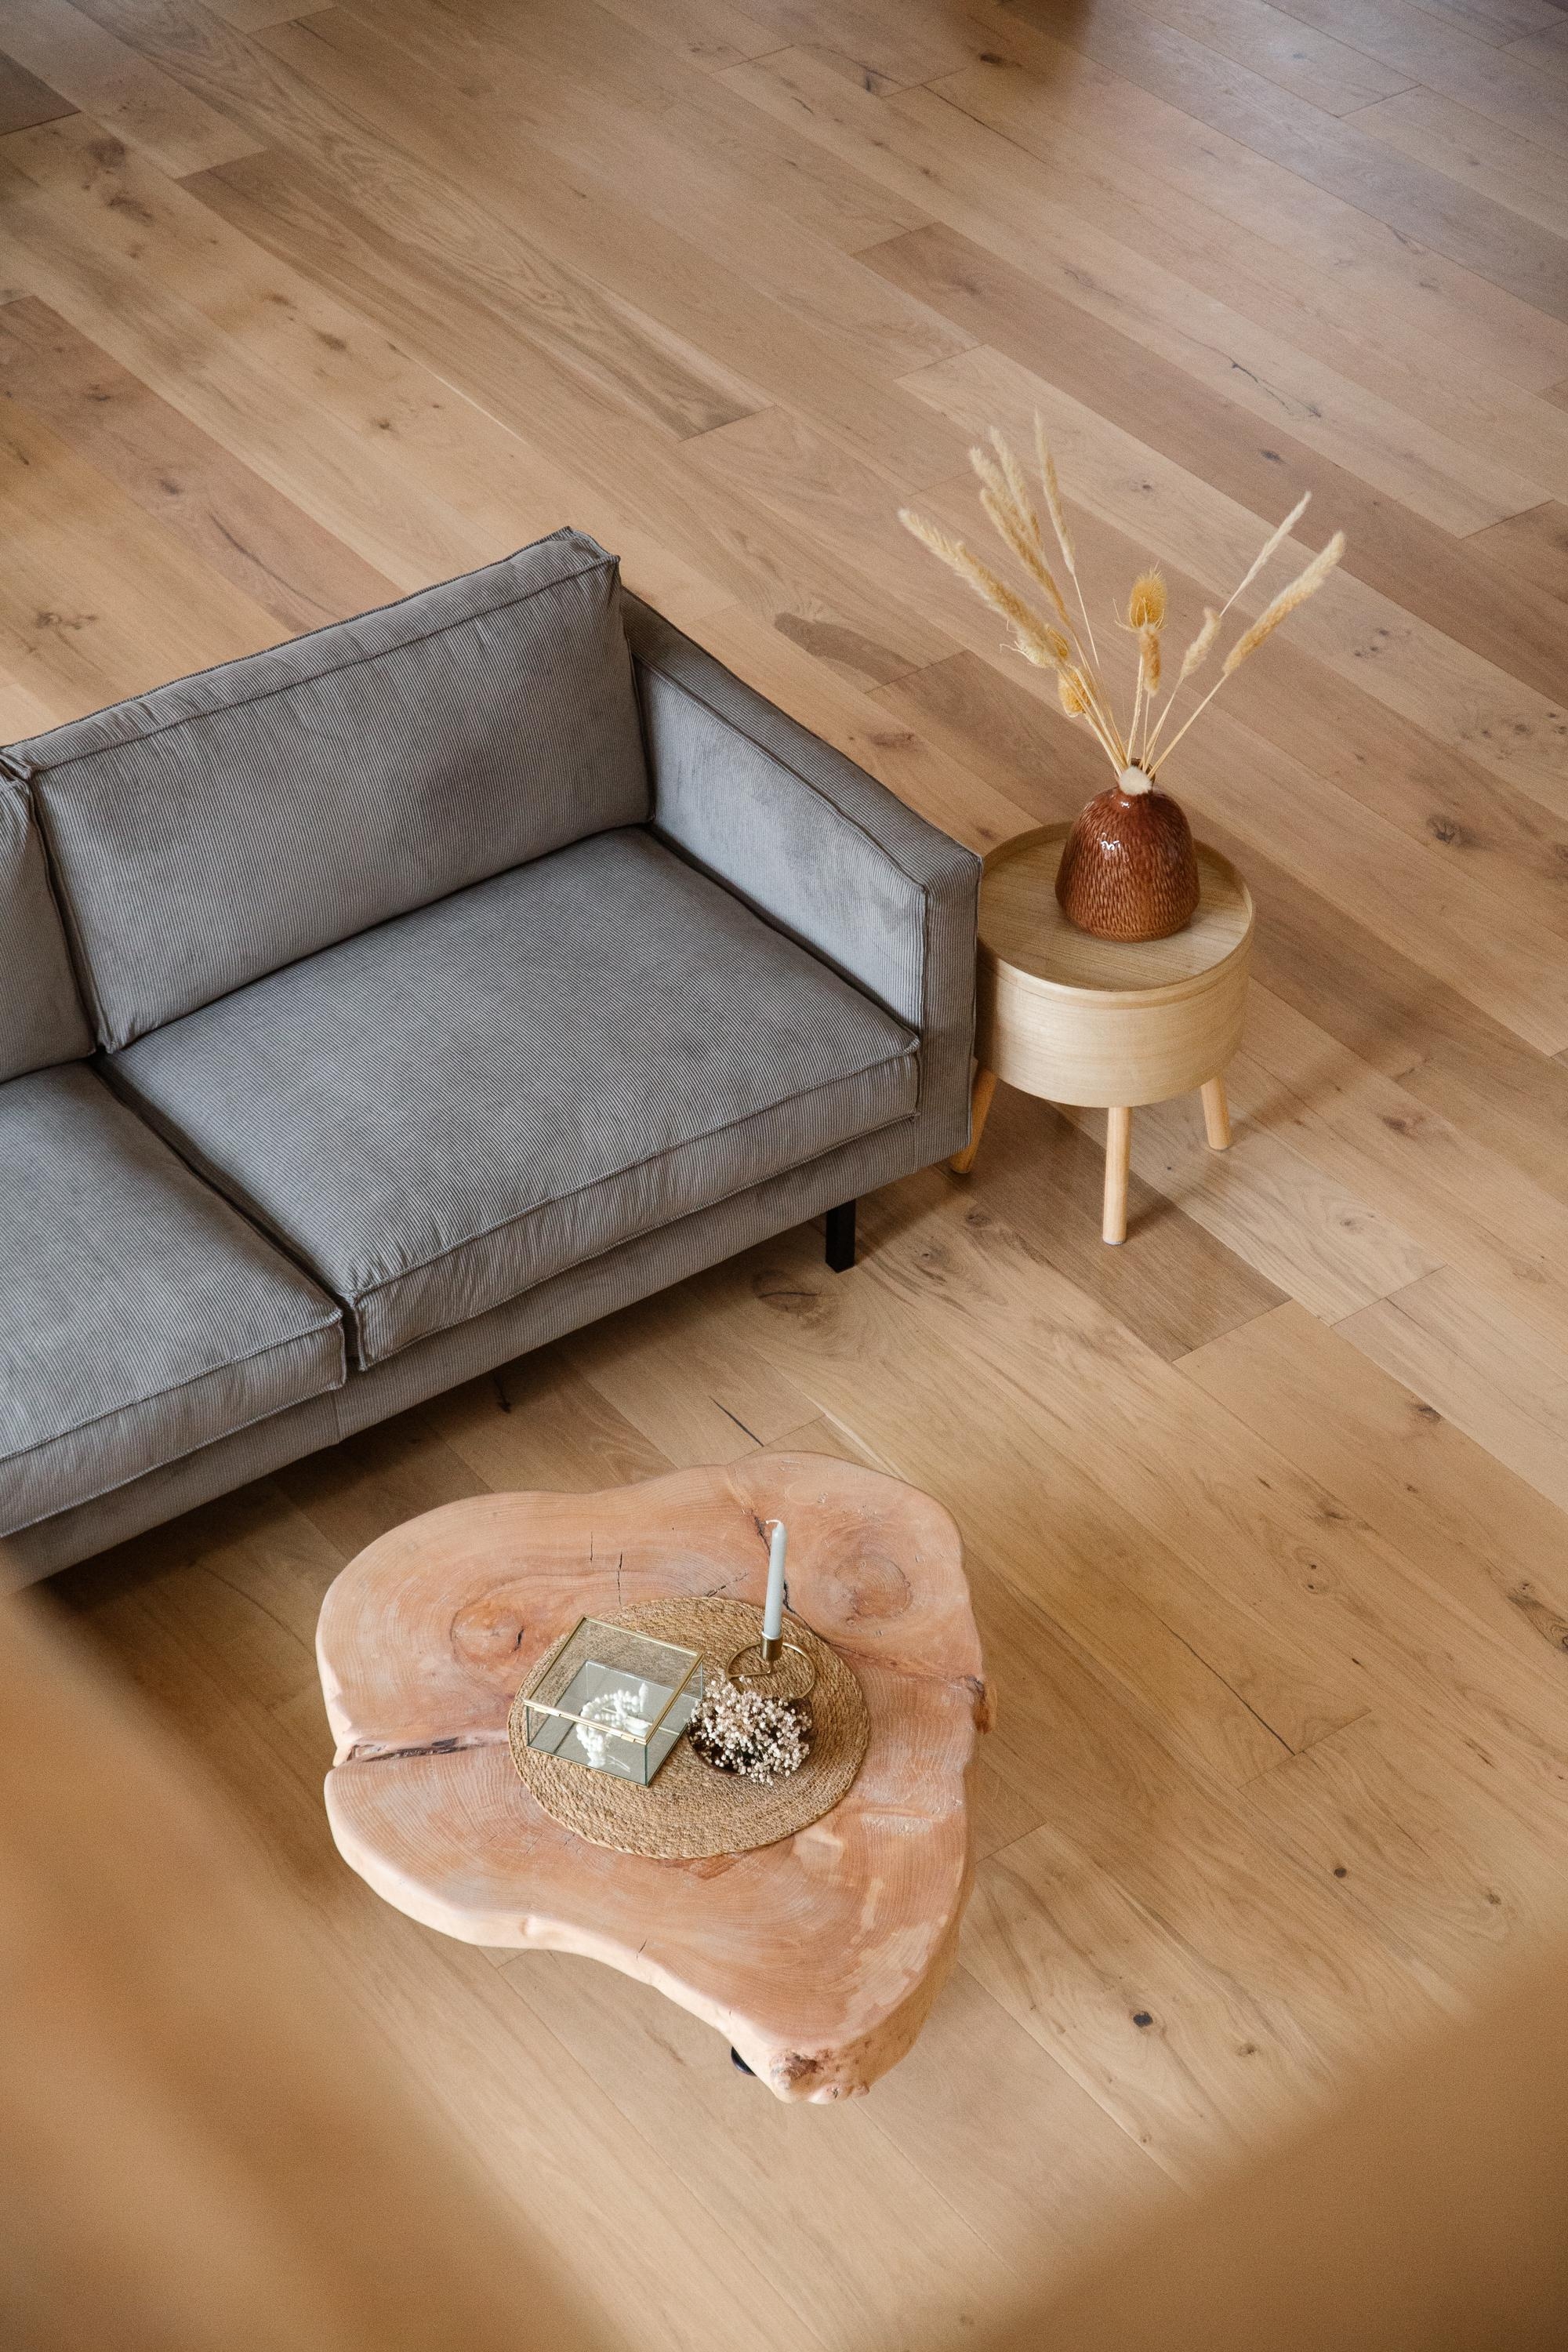 Unser Sofa ist auch eingezogen 🖤
#Sofa #bysidde #wohnzimmer